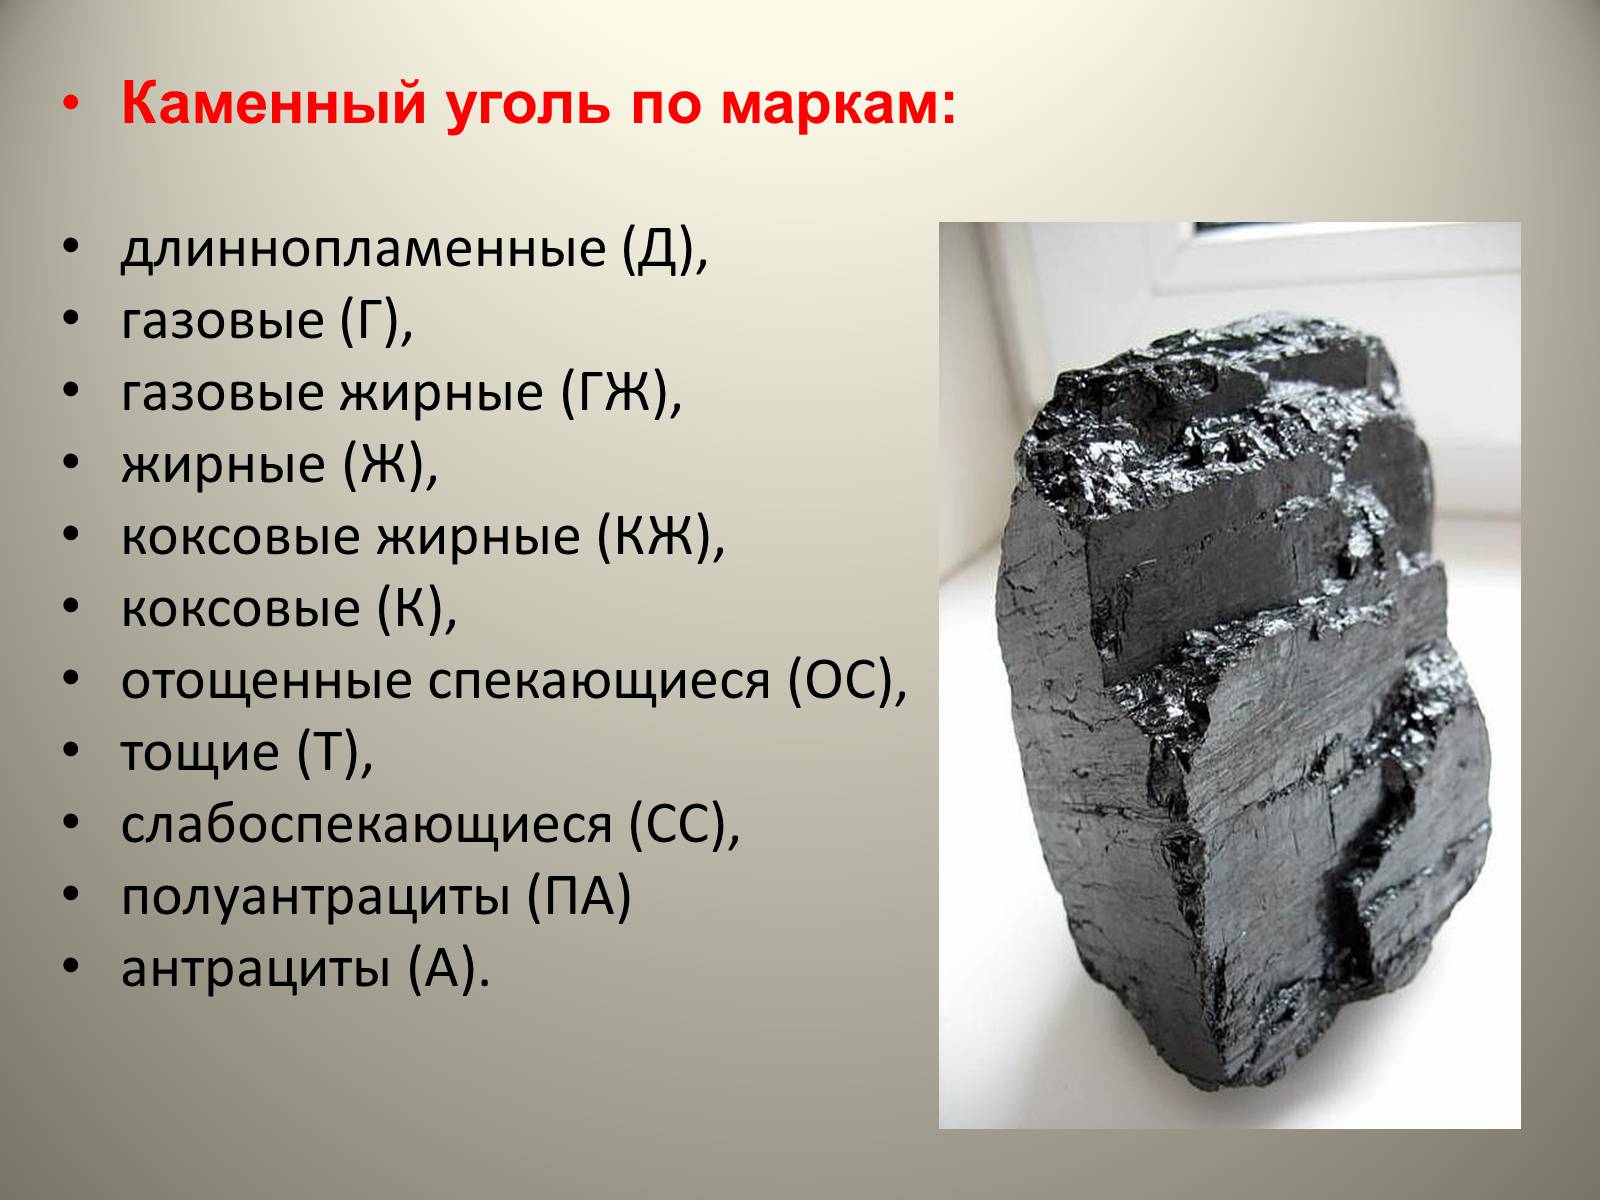 Каменный уголь период. Каменный уголь презентация. Уголь для презентации. Проект каменный уголь. Сведения о Каменном угле.